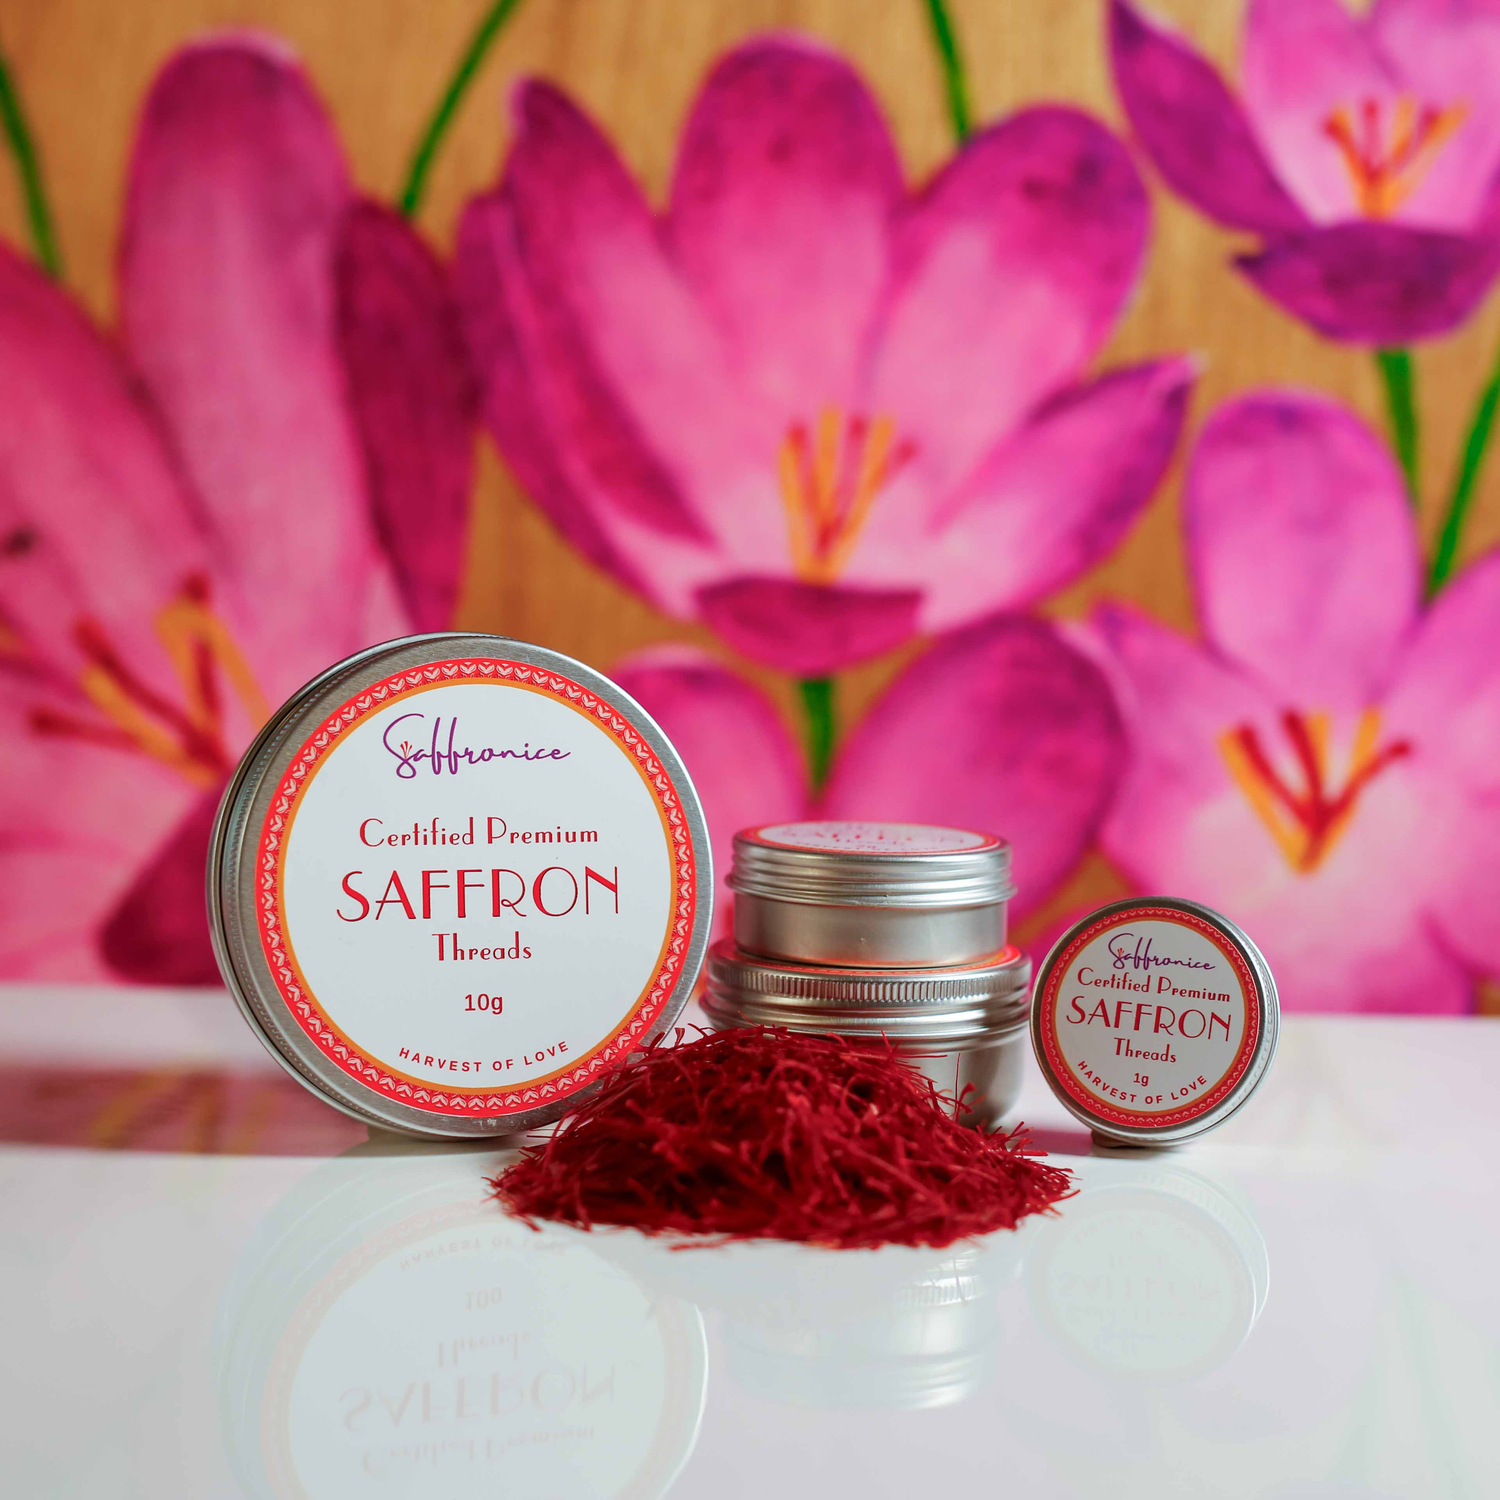 Bright red saffron threads